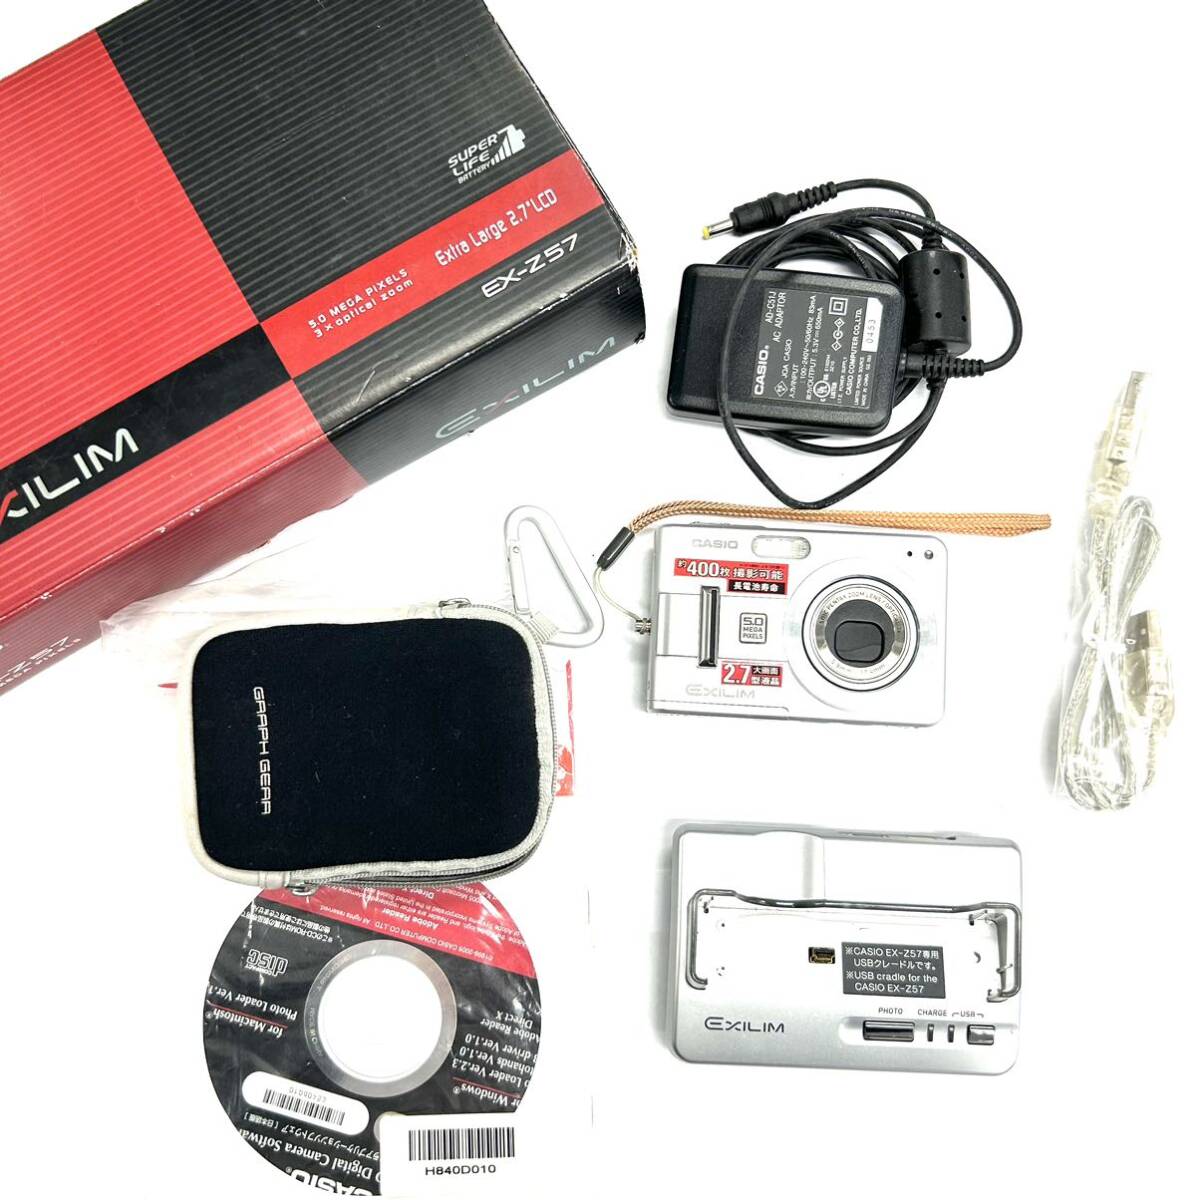 Y608 コンパクトデジタルカメラ CASIO カシオ EXILIM エクシリム EX-Z7 5.8mm-17.4mm 5.0MEGA PIXELS ジャンク品 中古 訳あり_画像1